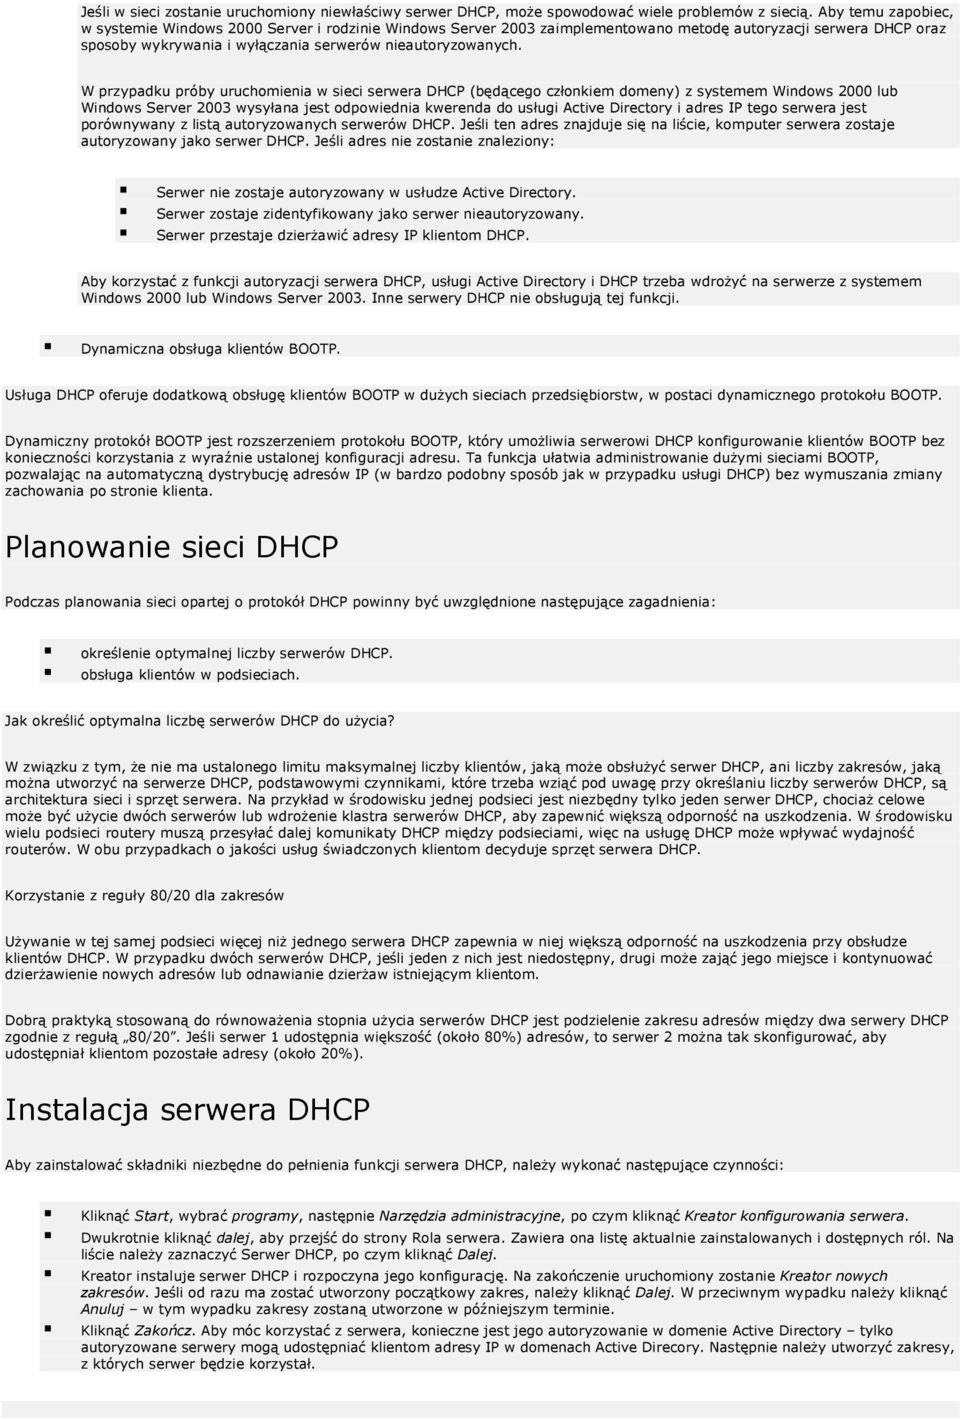 W przypadku próby uruchomienia w sieci serwera DHCP (będącego członkiem domeny) z systemem Windows 2000 lub Windows Server 2003 wysyłana jest odpowiednia kwerenda do usługi Active Directory i adres